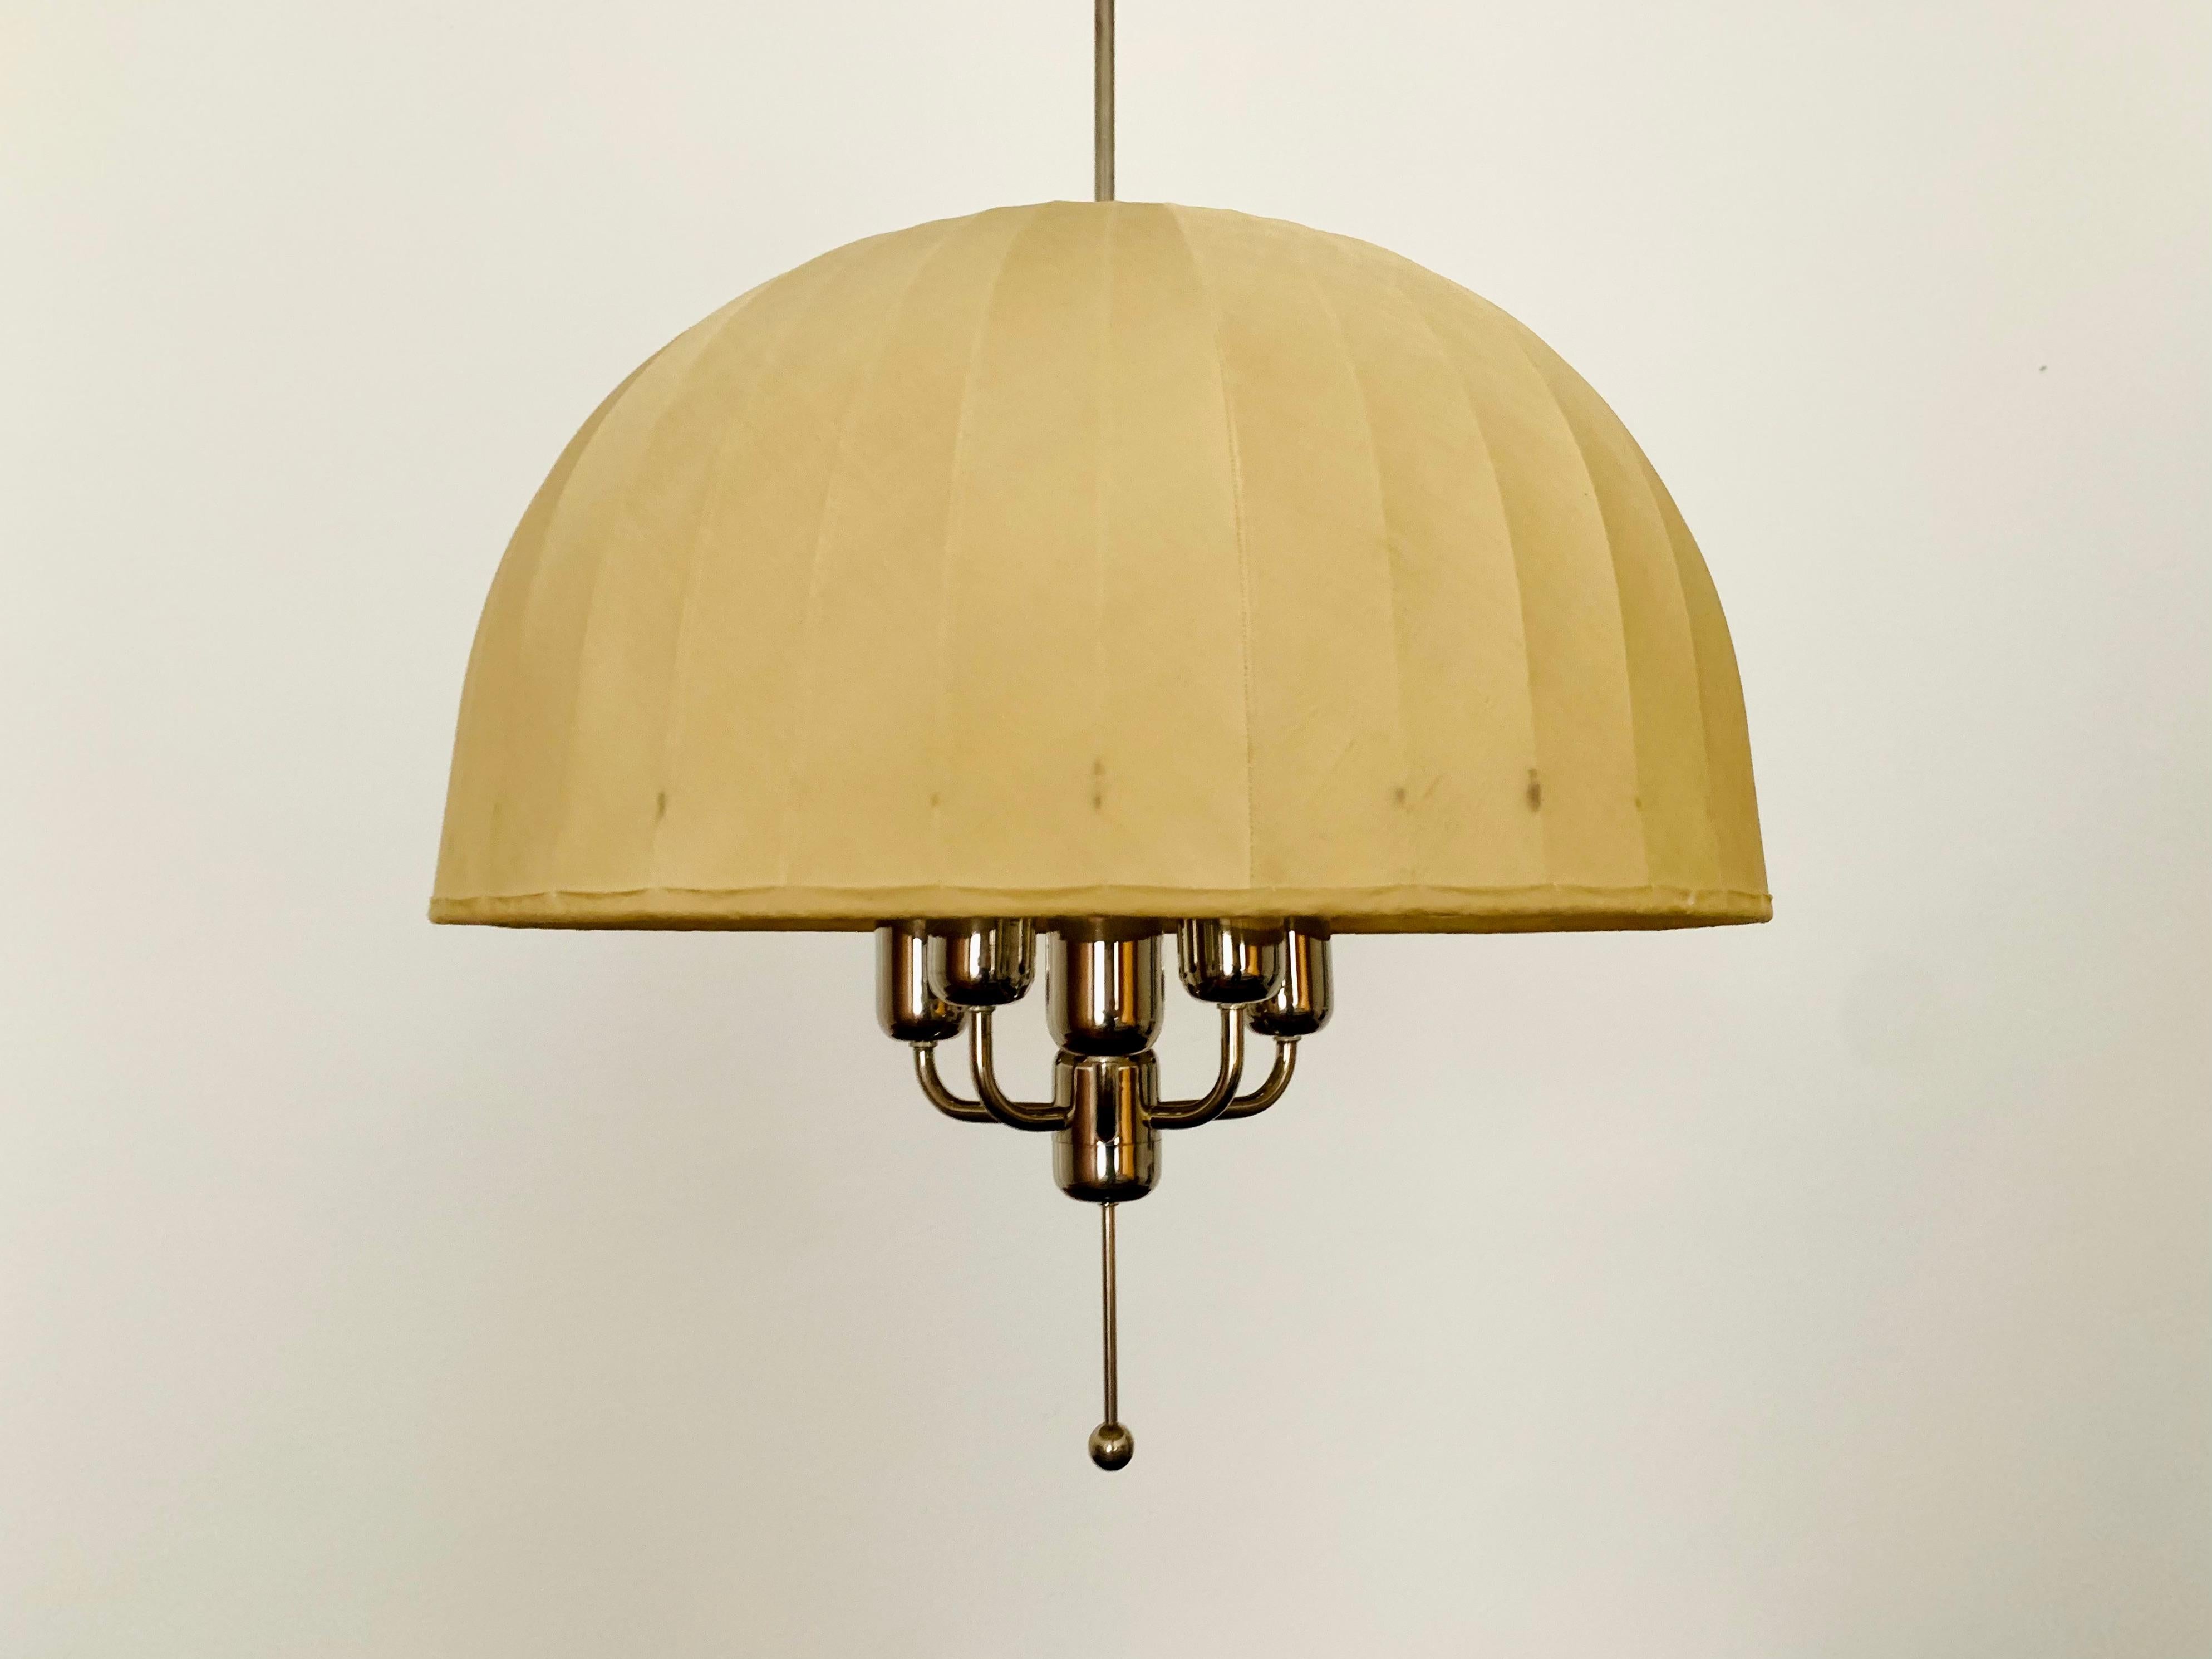 Merveilleuse et très rare lampe suspendue suédoise des années 1960.
La lampe avec l'abat-jour flottant est un véritable atout et un favori absolu pour chaque maison.
Une lumière très agréable et chaleureuse est créée.

Fabricant : Markaryd AB